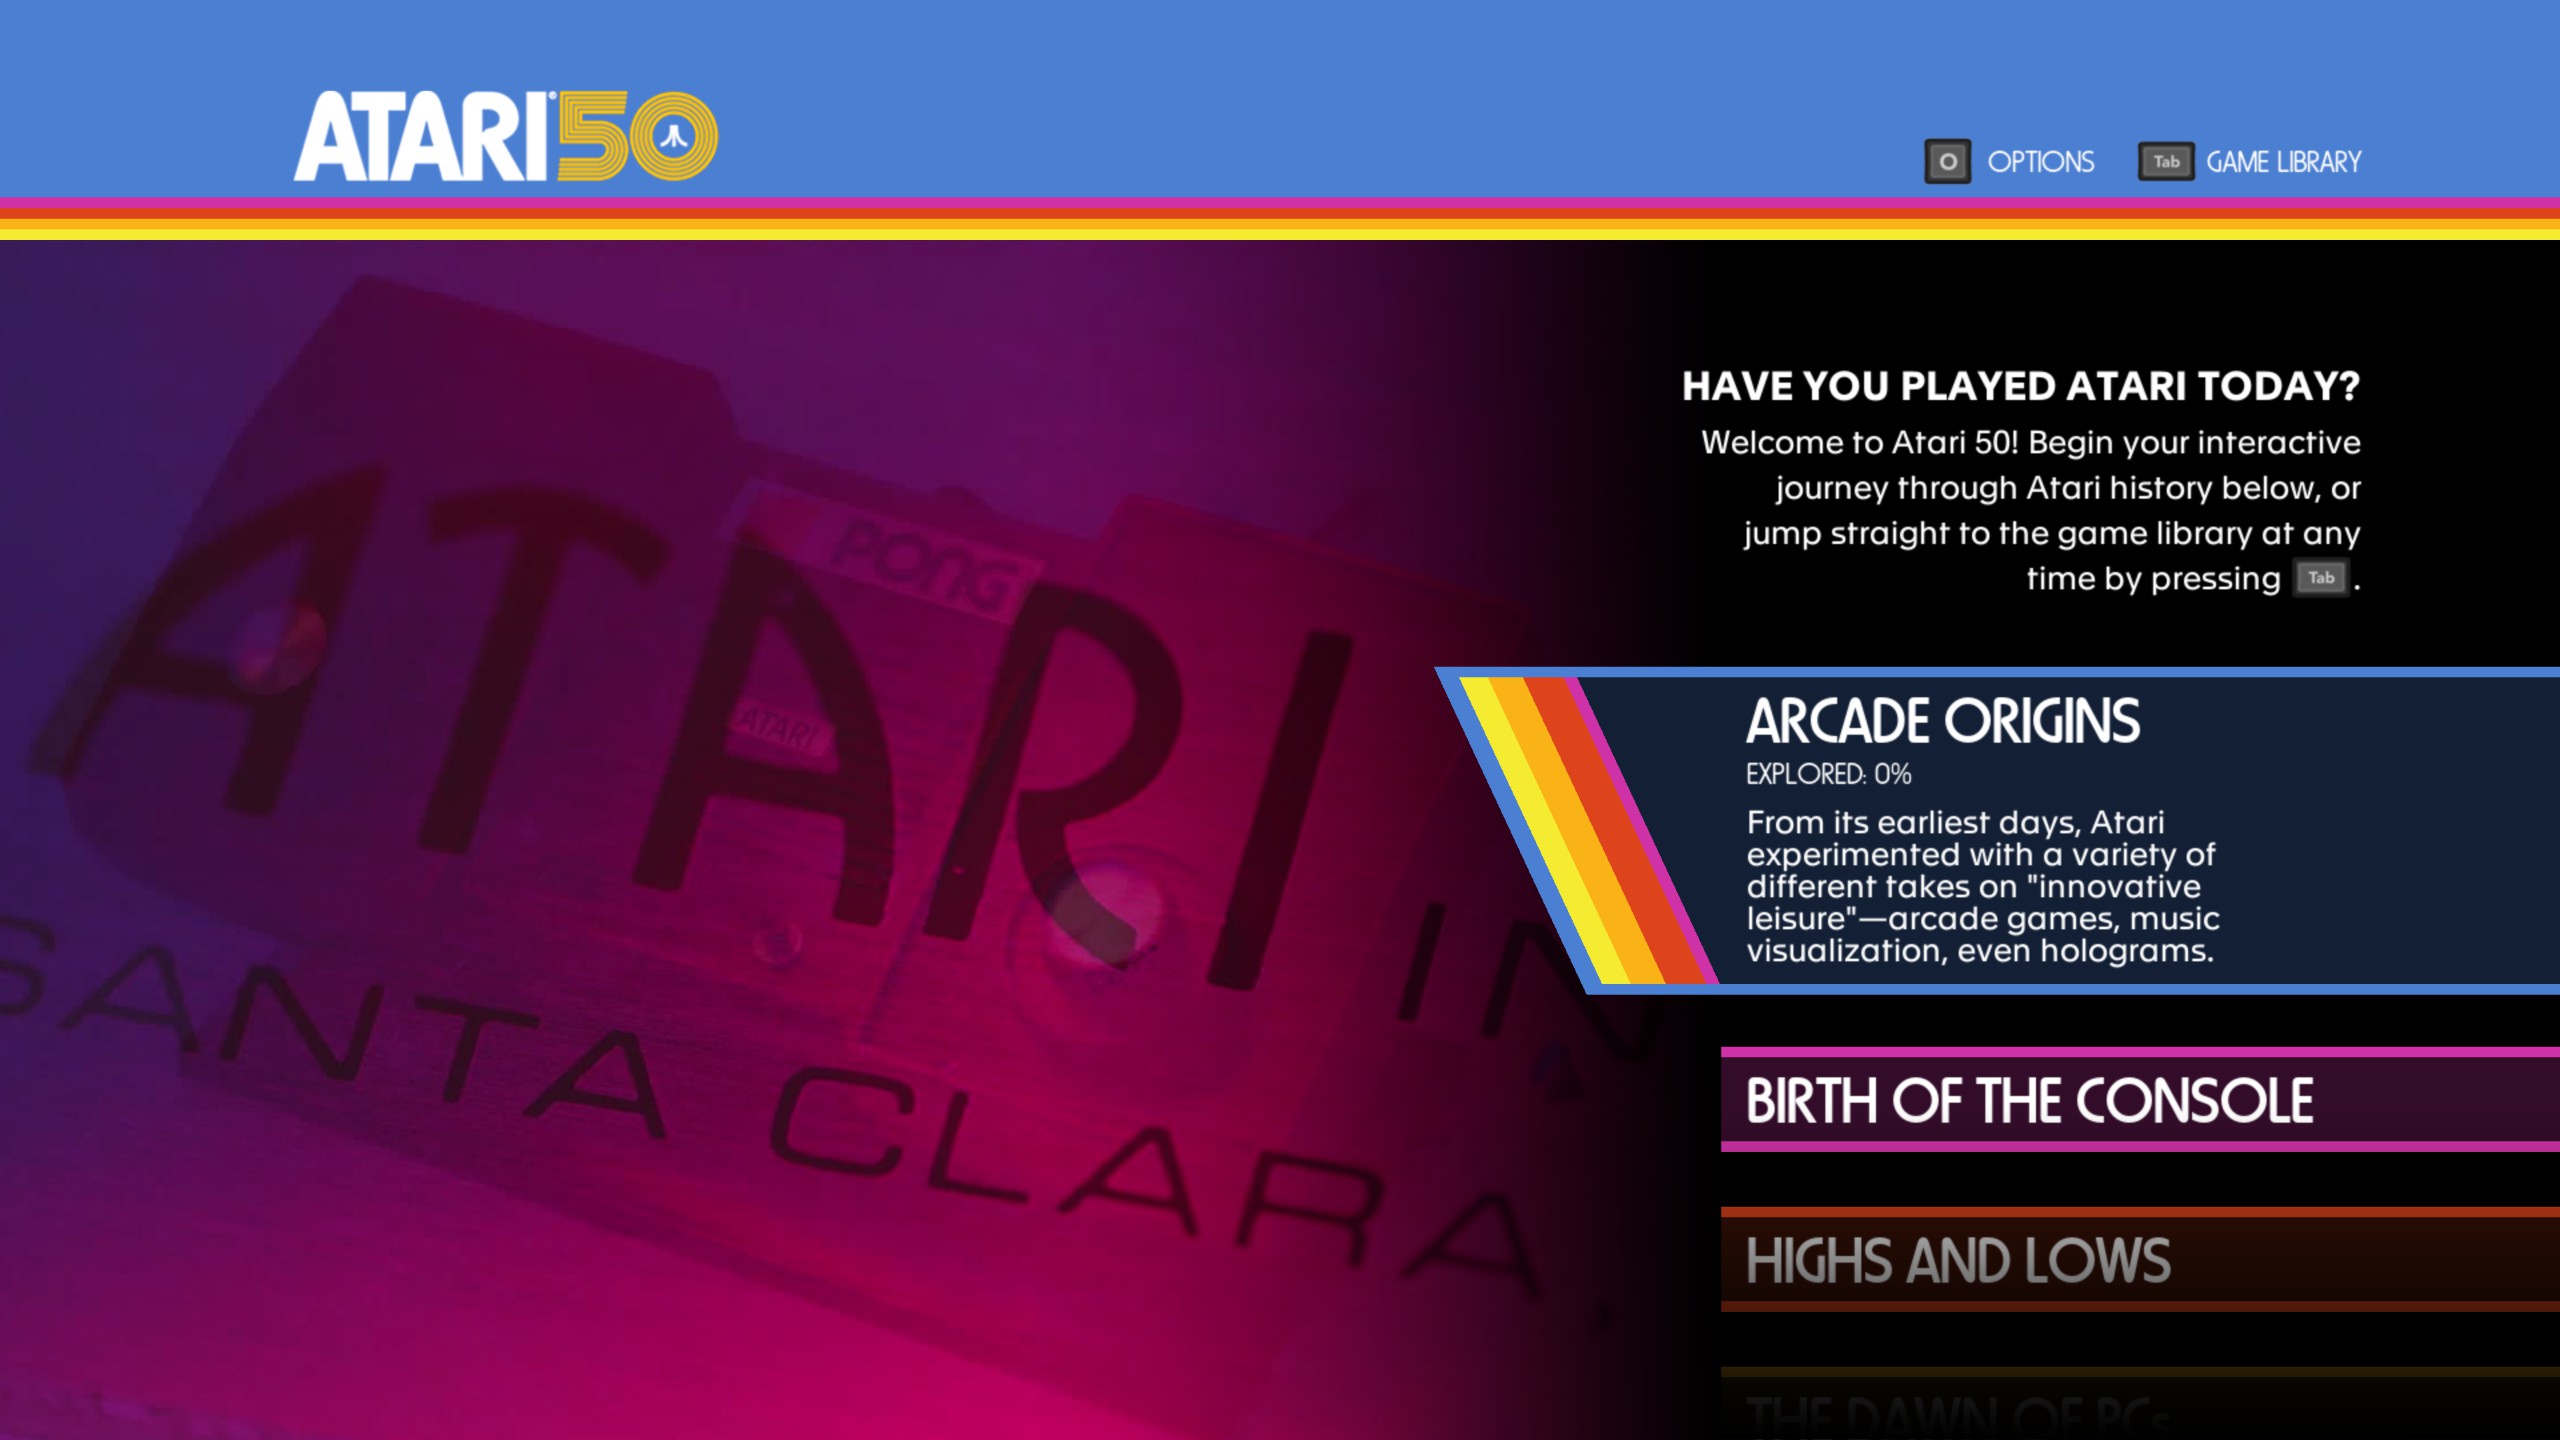 Image depicting the menu options of Atari50